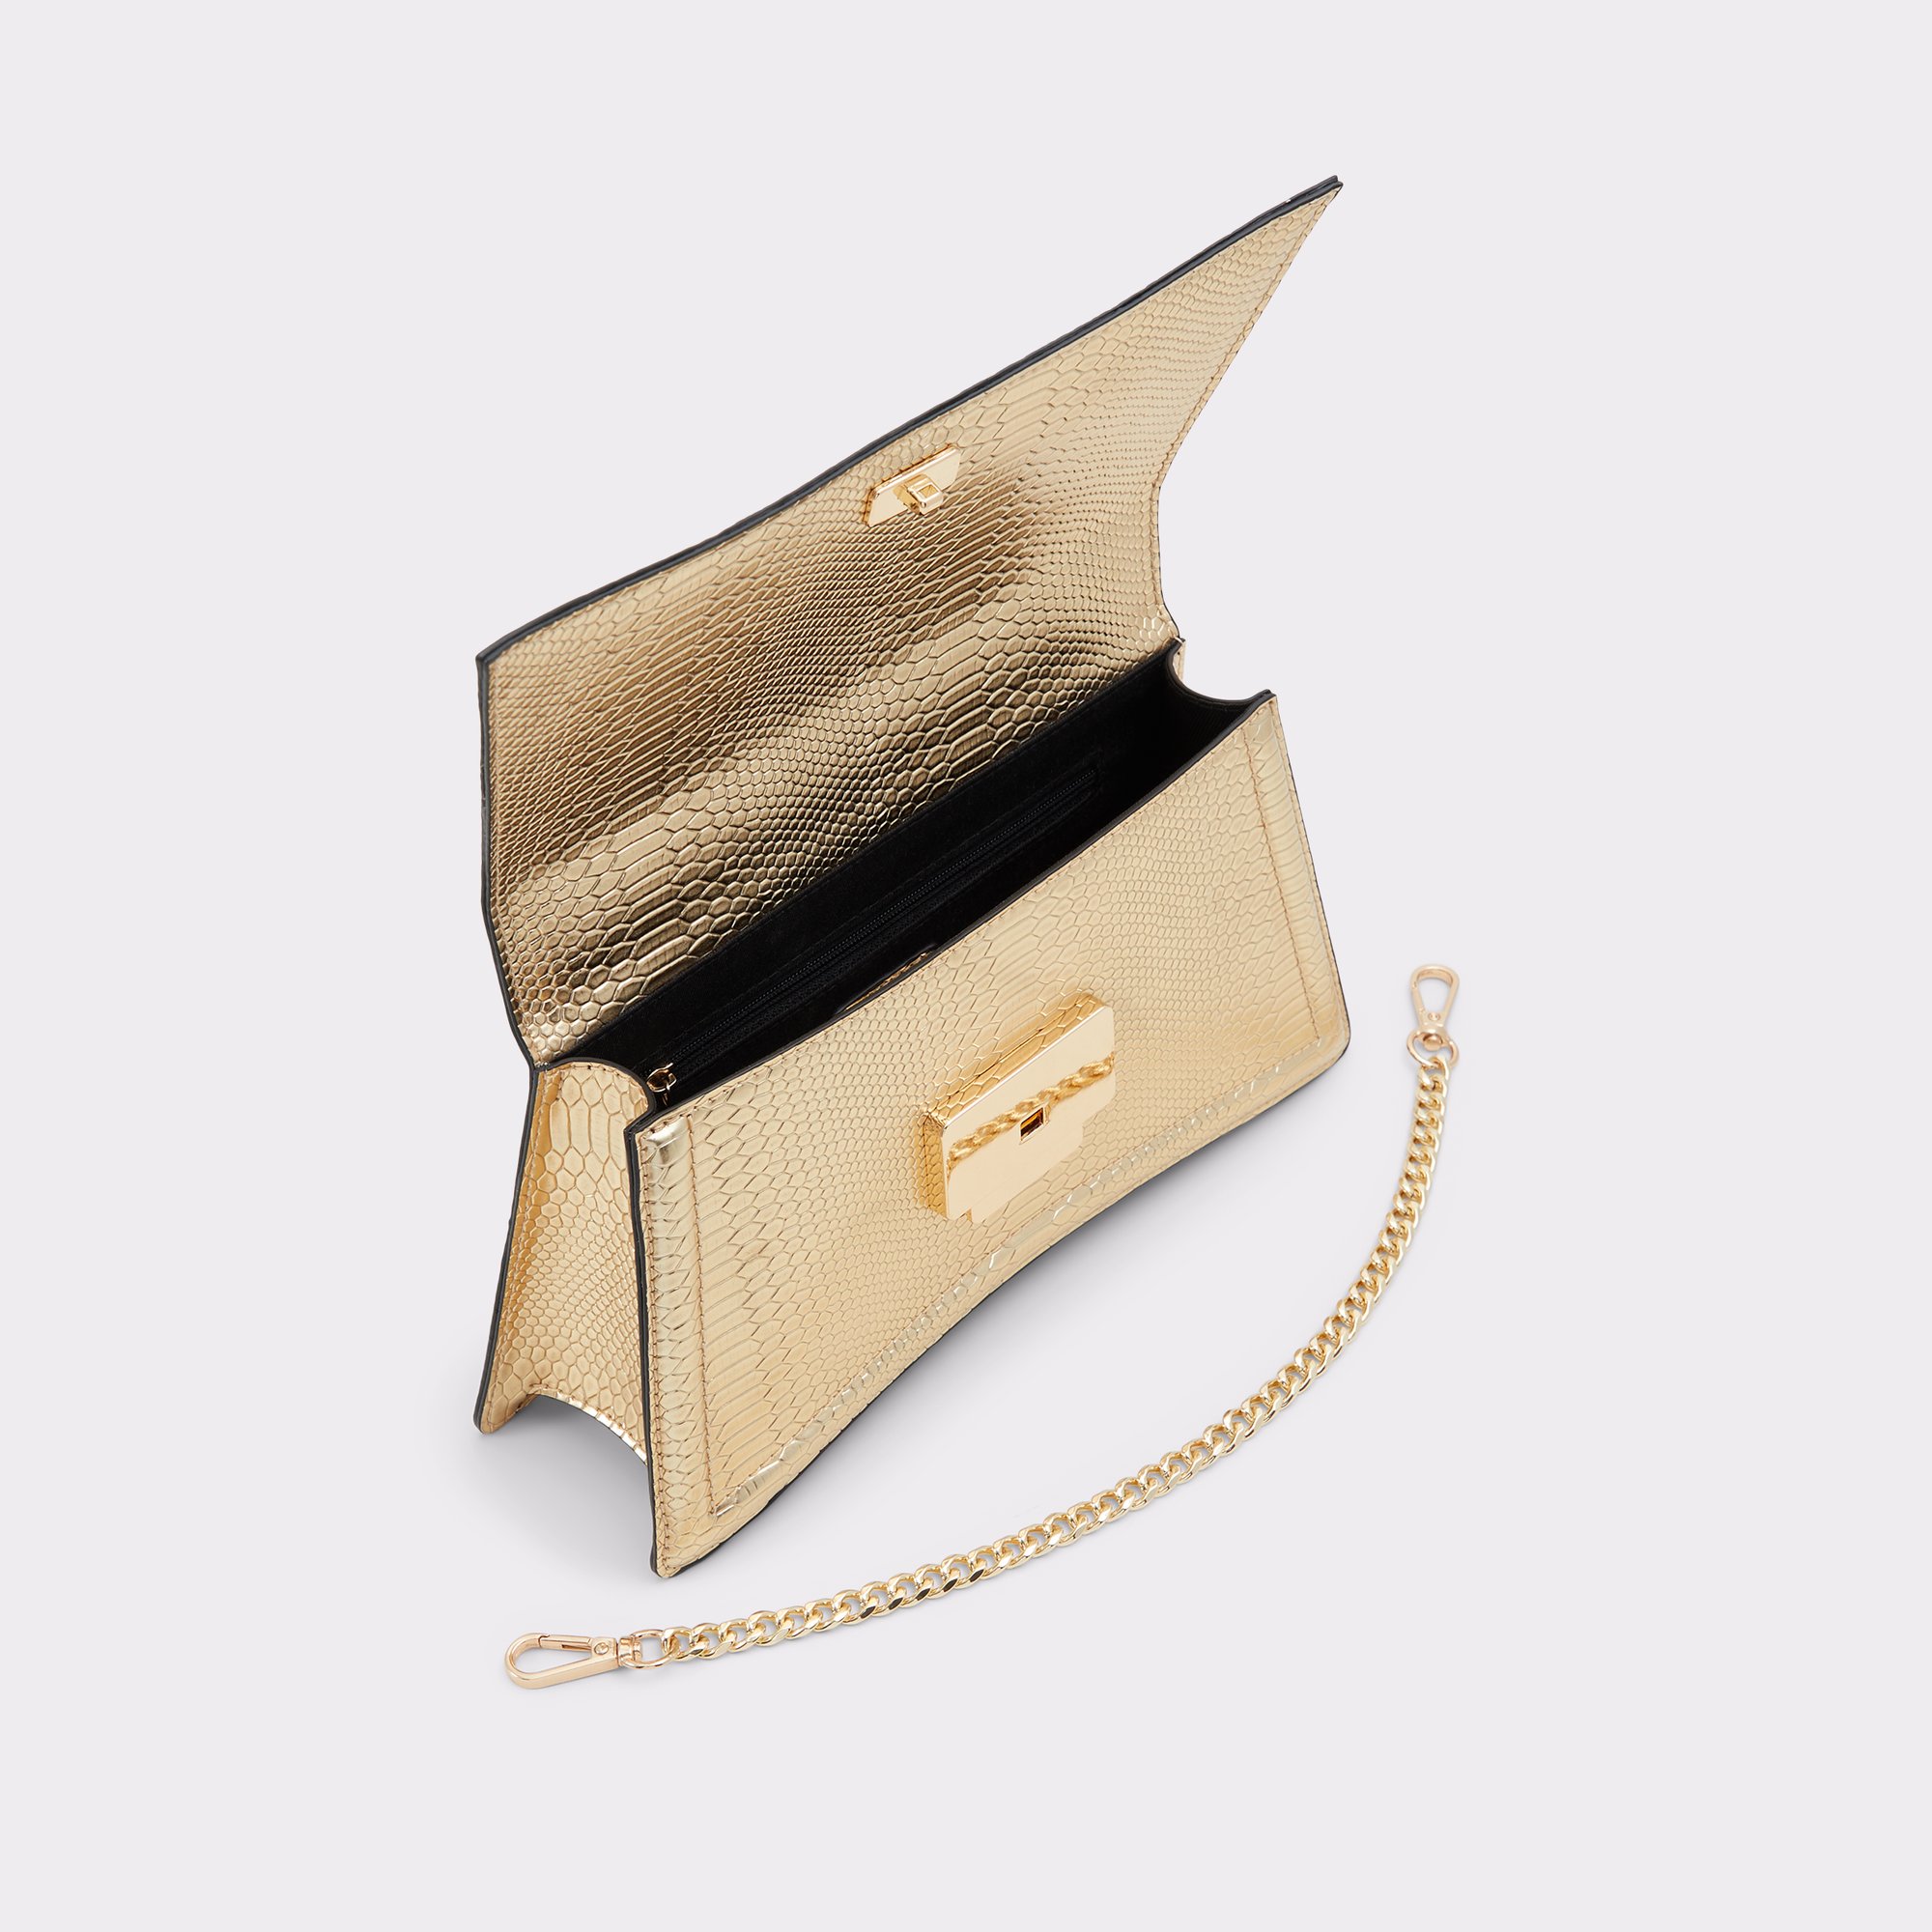 Attleyyx Gold Women's Top Handle Bags | ALDO US